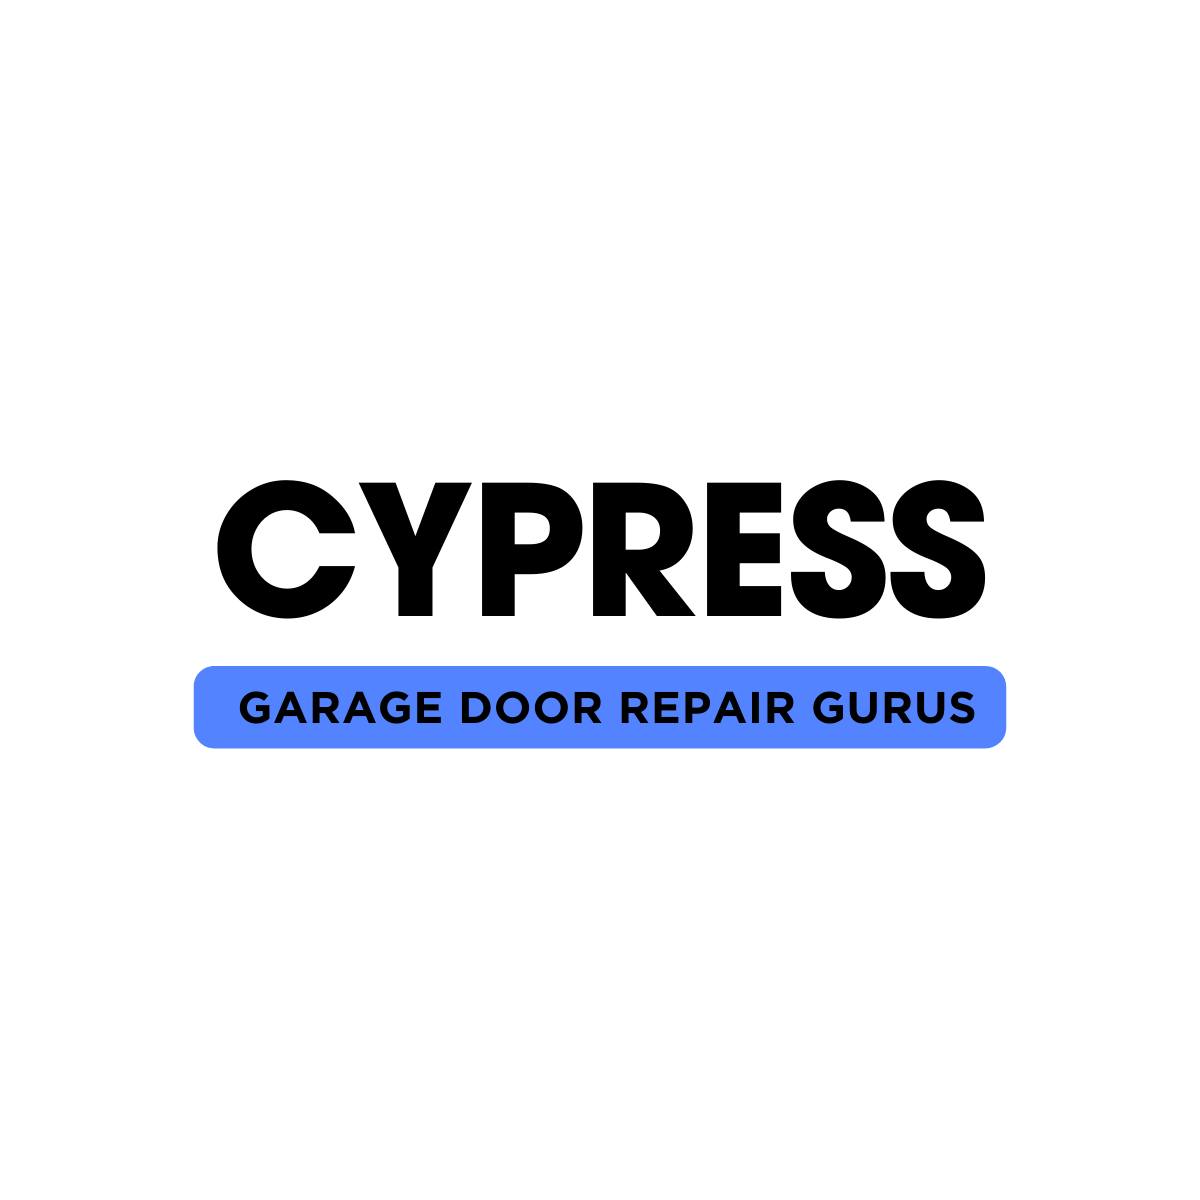 Cypress Garage Door Repair Gurus